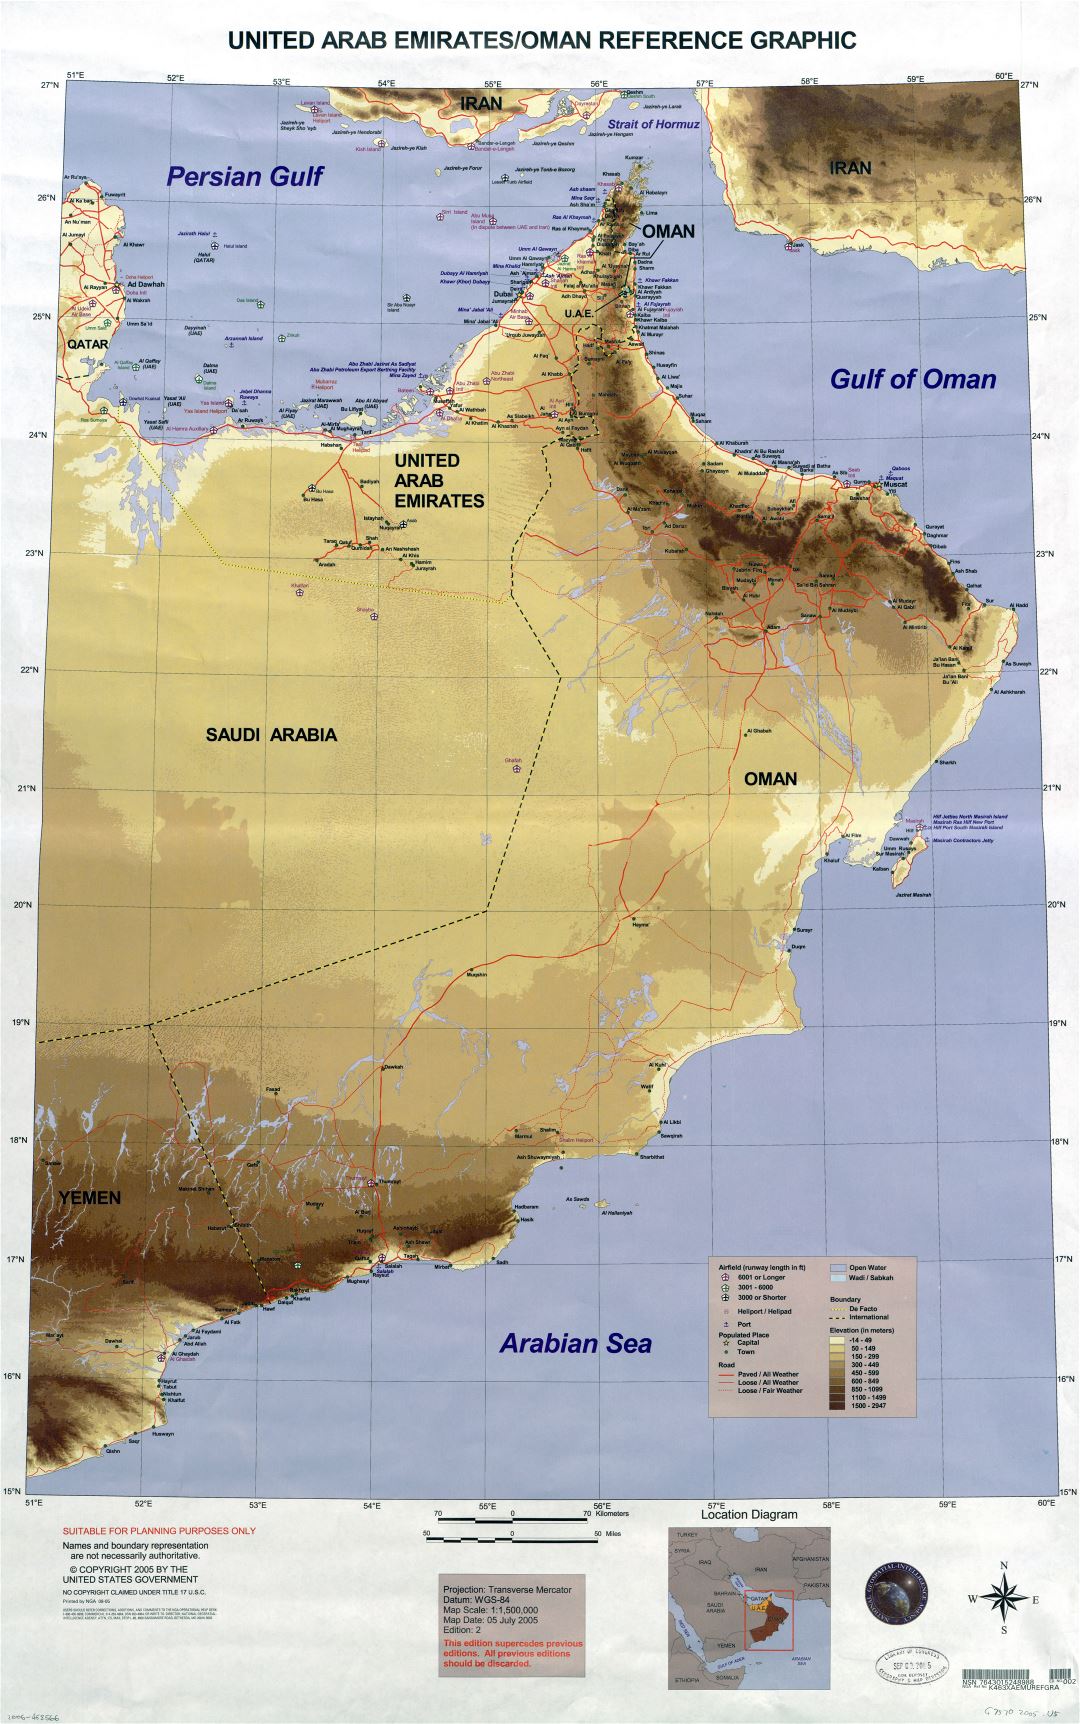 Крупномасштабная детальная карта Объединенных Арабских Эмиратов и Омана - 2005